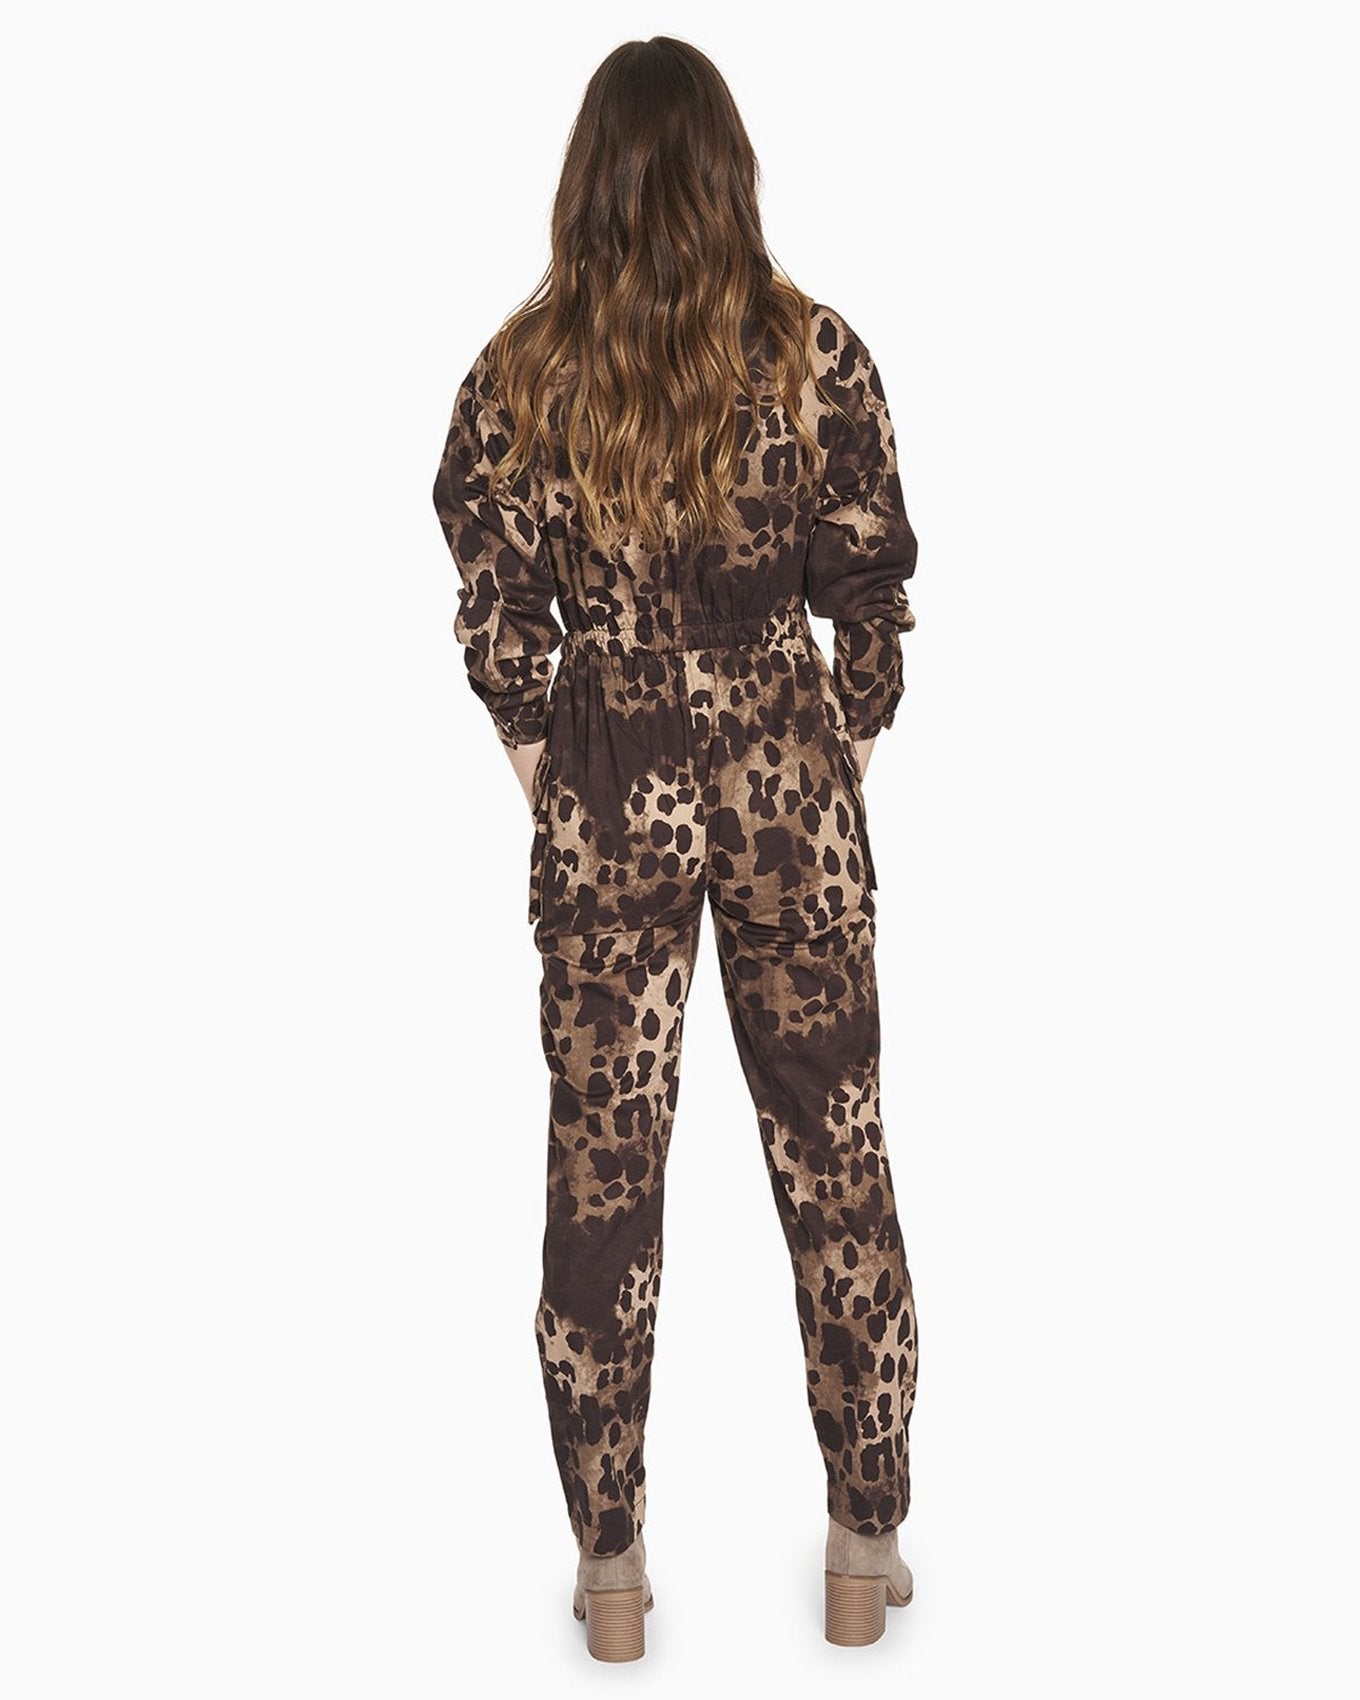 YesAnd Organic Print Zip Front Jumpsuit Jumpsuit in color Classic Leopard C01 and shape jumpsuit